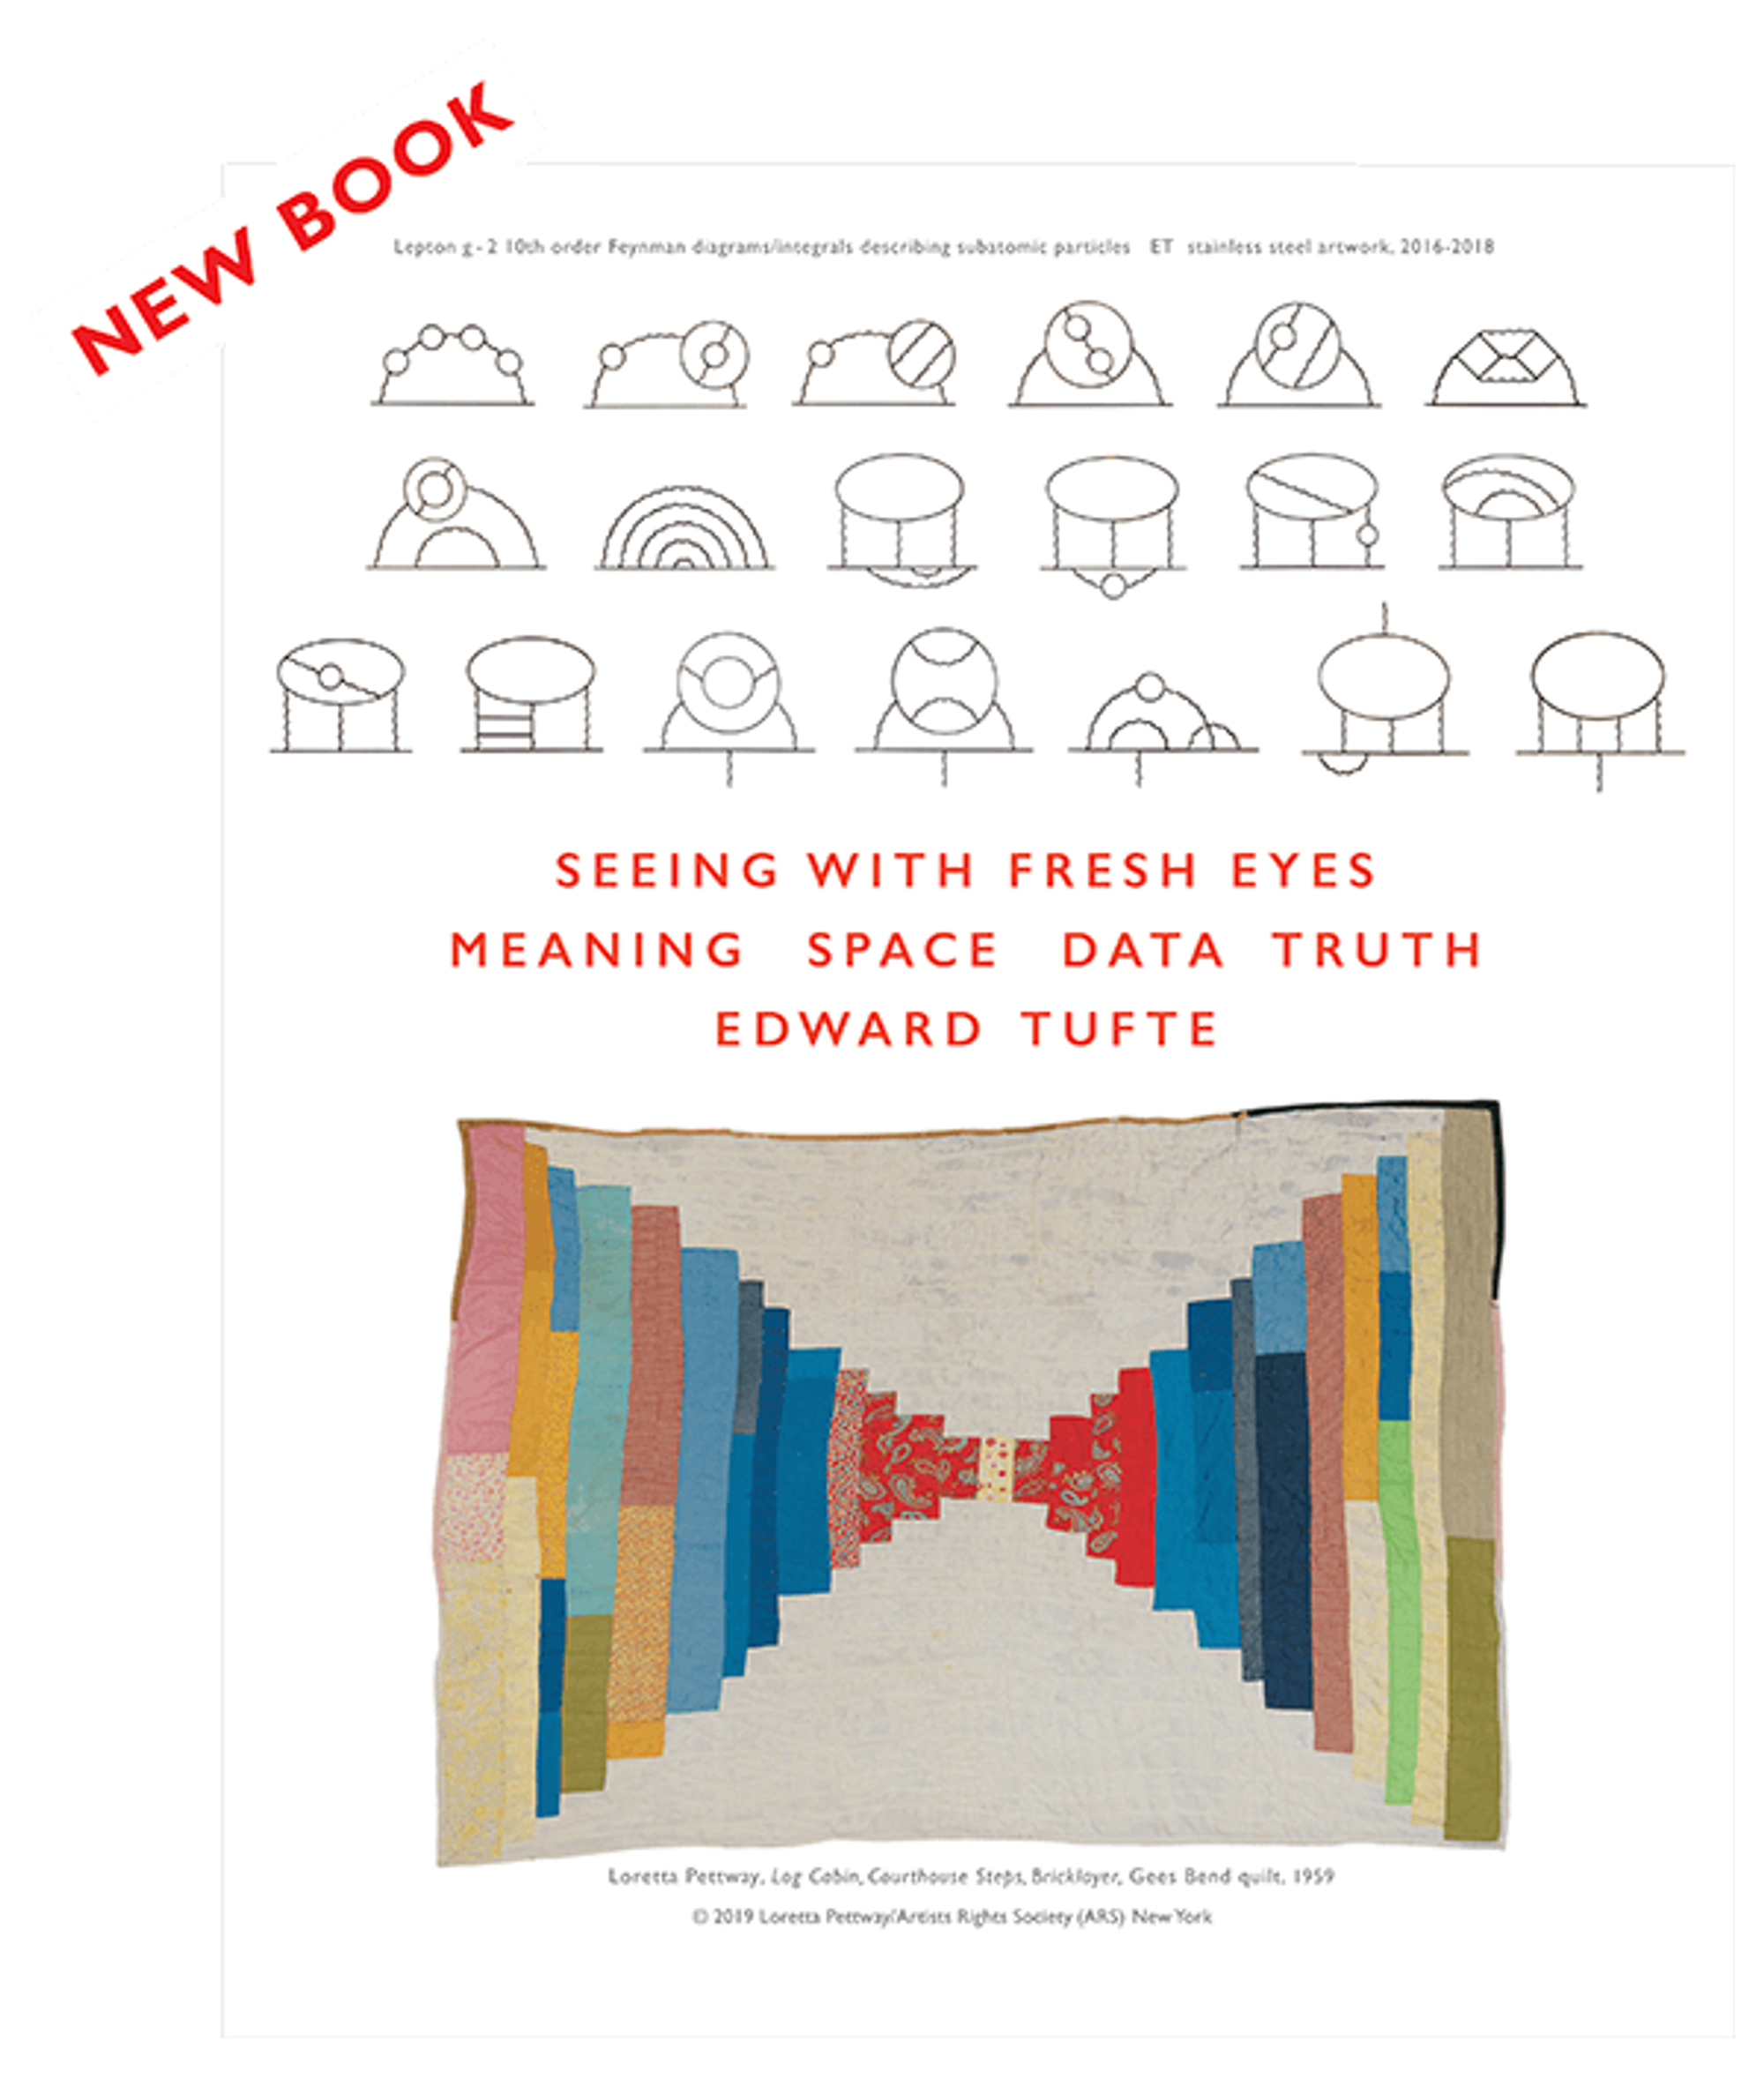 Le nouveau livre d'Edward Tufte est désormais en vente